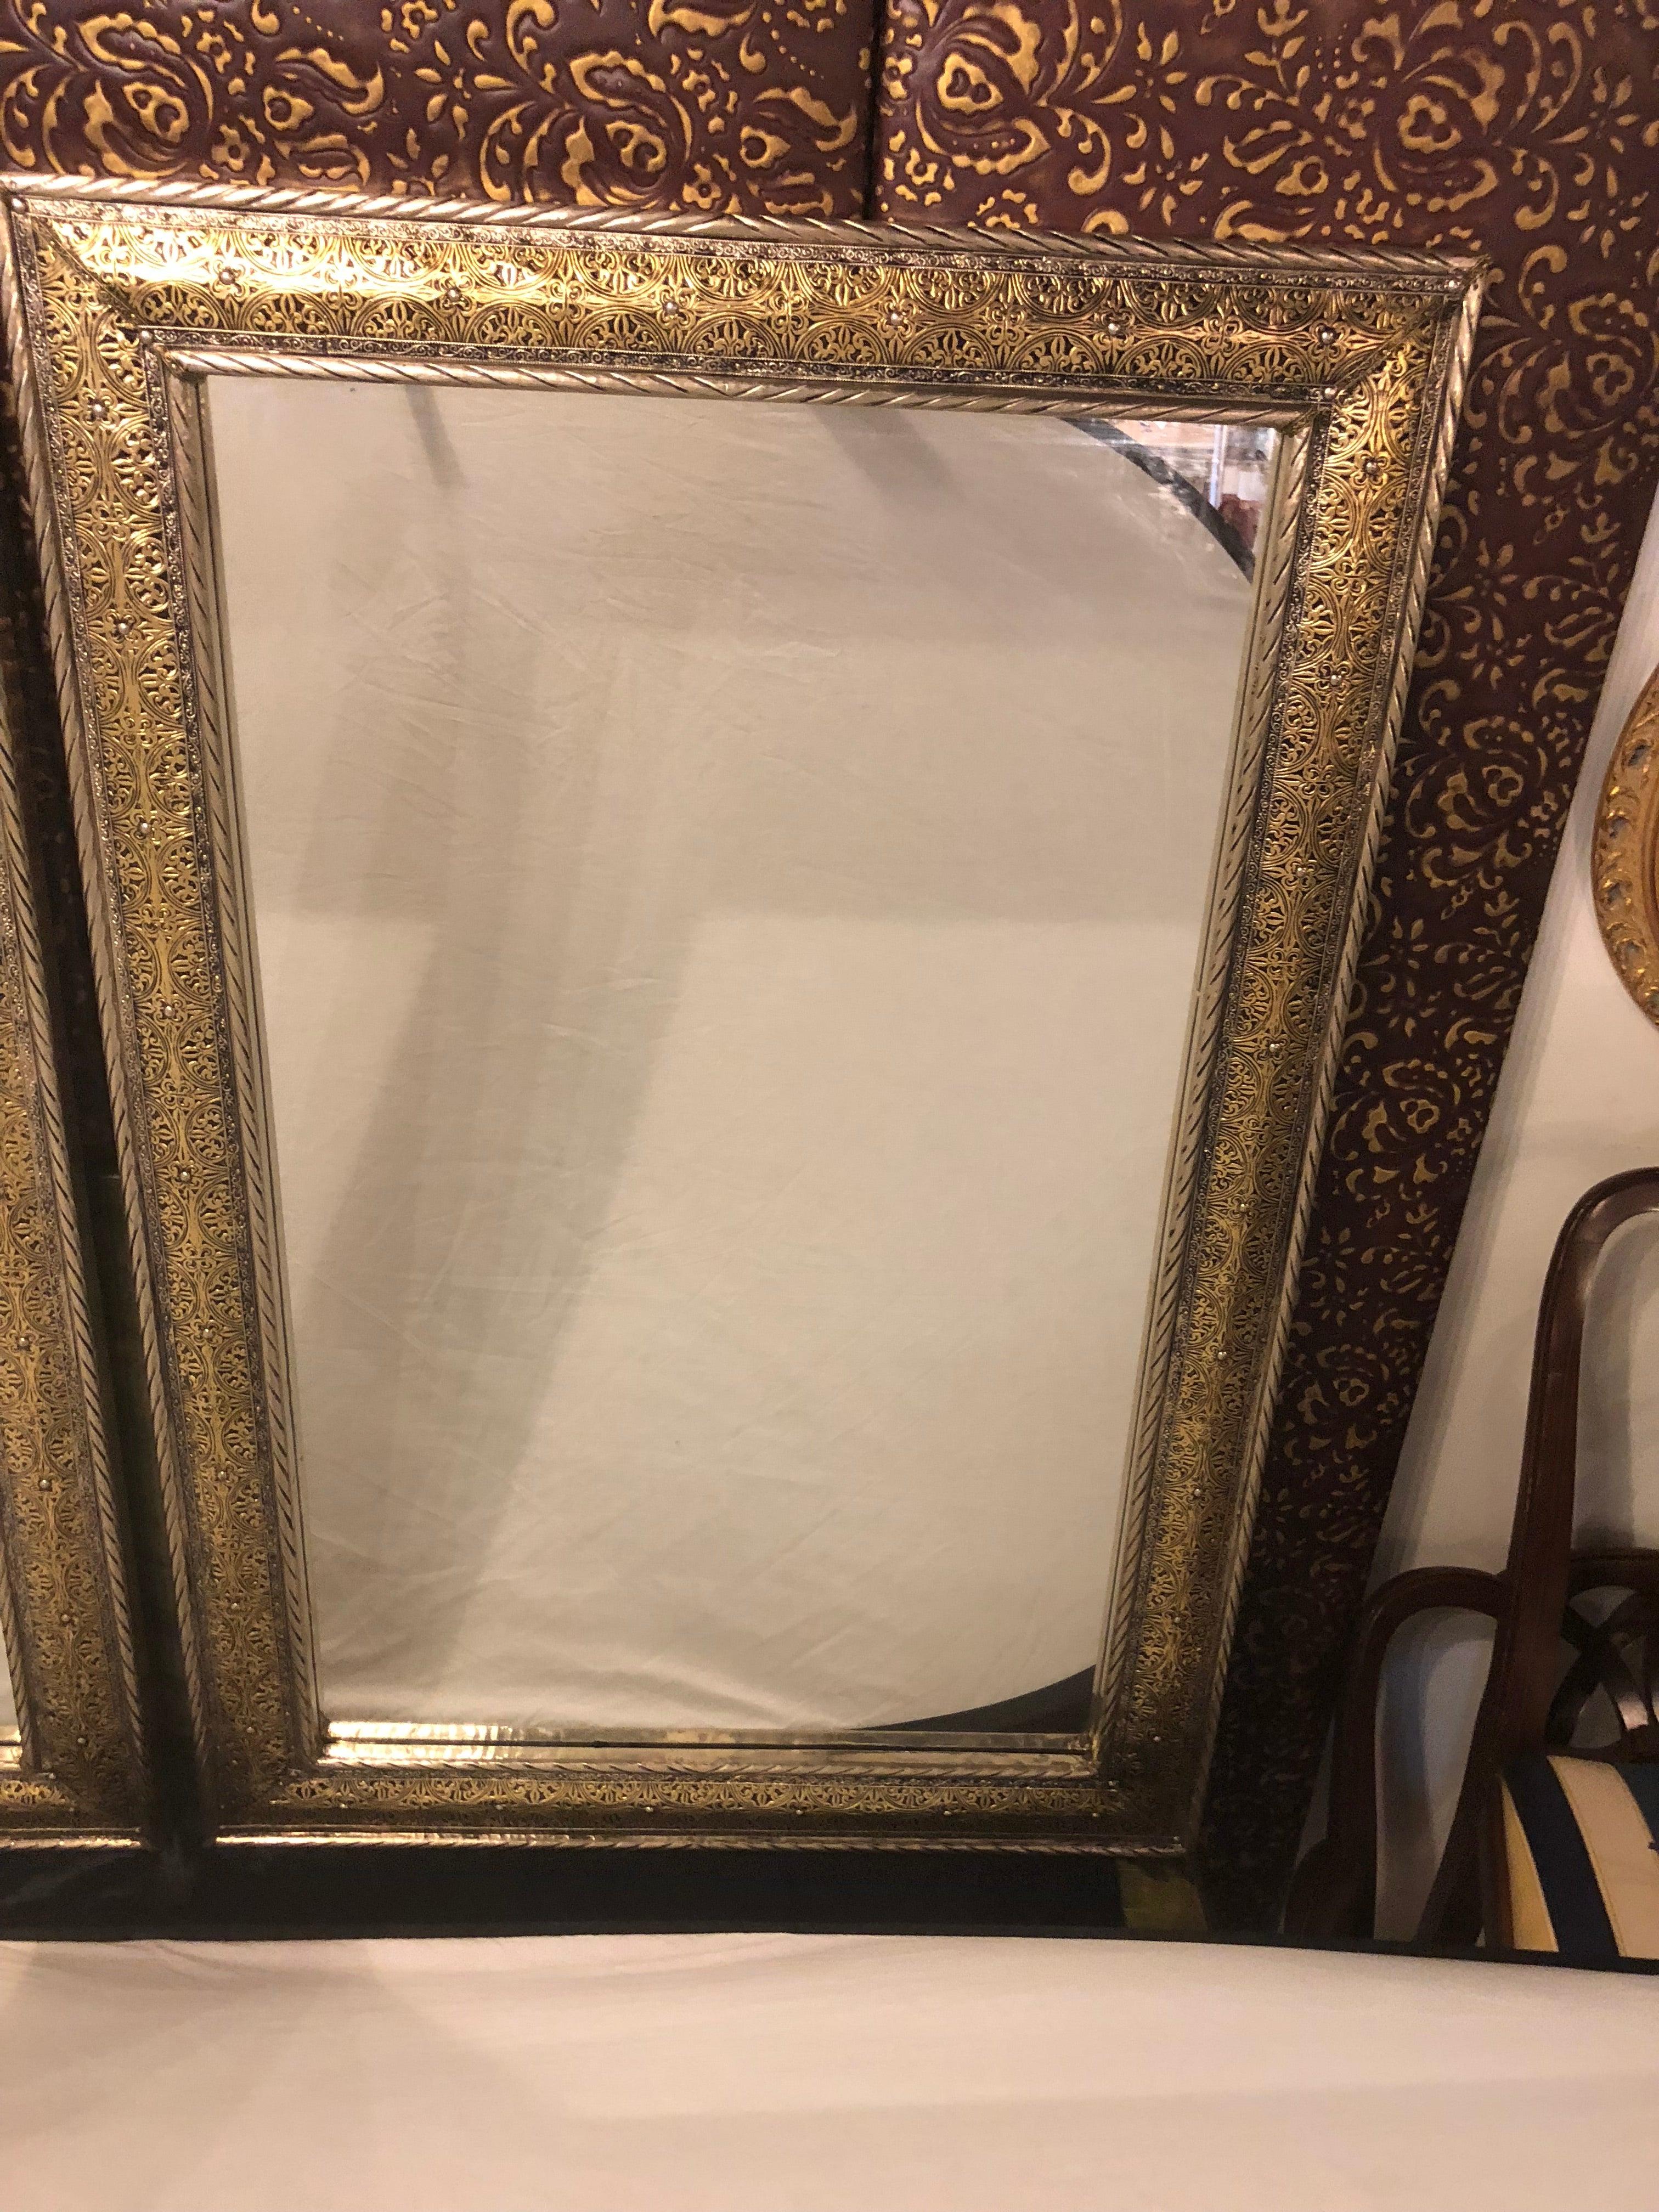 Ein beeindruckendes Paar großer Spiegel im Hollywood-Regency-Stil. Die Spiegel verfügen über einen außergewöhnlichen Rahmen aus goldenem Messing auf silbernem Metall, der in filigraner Handarbeit gefertigt ist. 

Kann als ein Stück gekauft